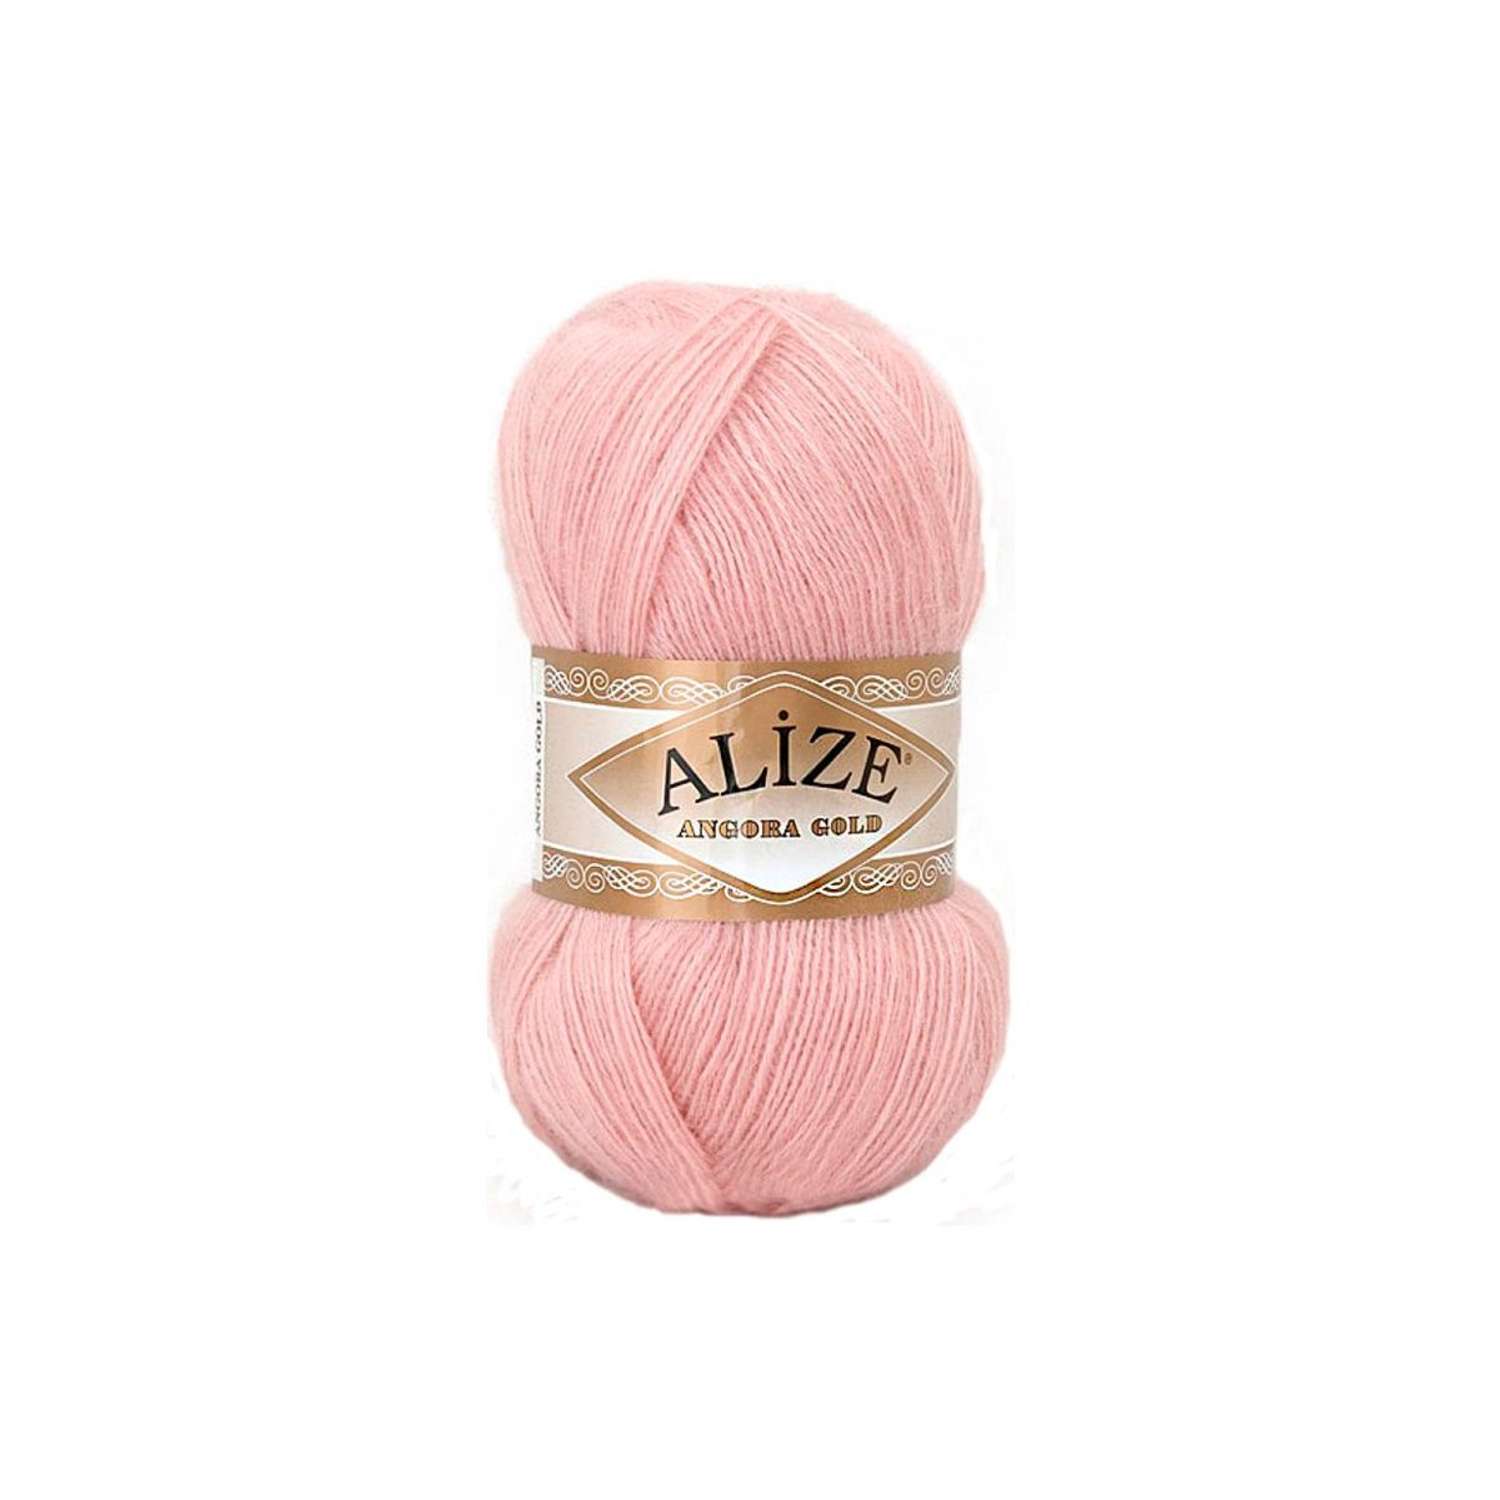 Пряжа Alize мягкая теплая для шарфов кардиганов Angora Gold 100 гр 550 м 5 мотков 161 бл.розовый - фото 6